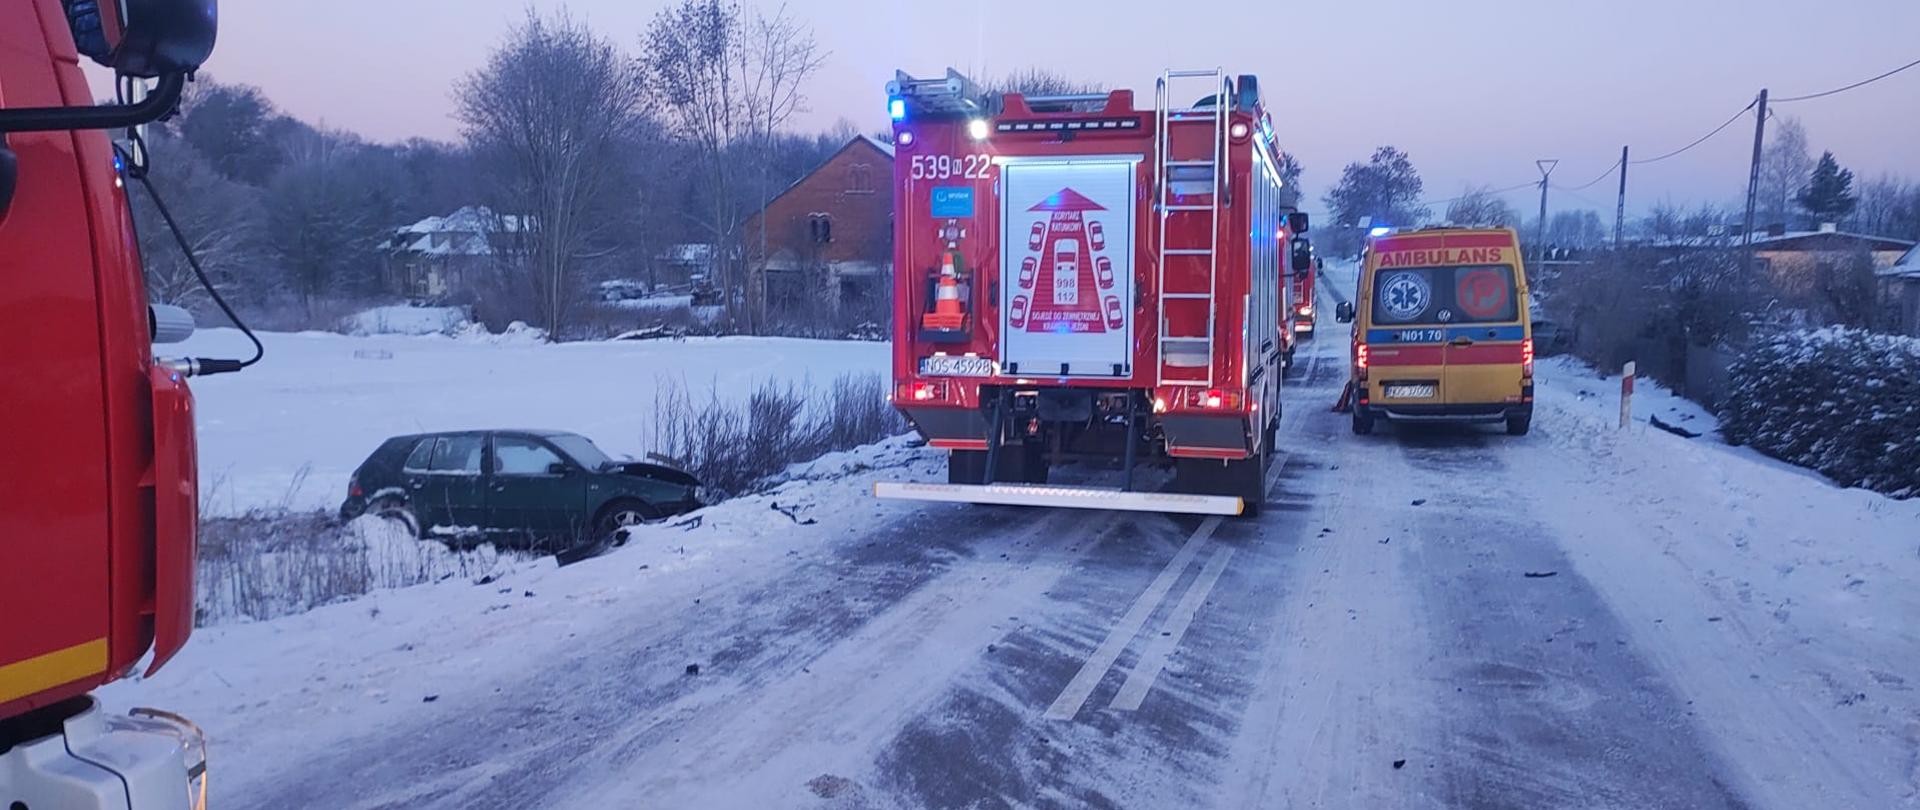 Pojazdy straży pożarnej i zespołu ratownictwa medycznego stoją na jezdni w miejscu zdarzenia